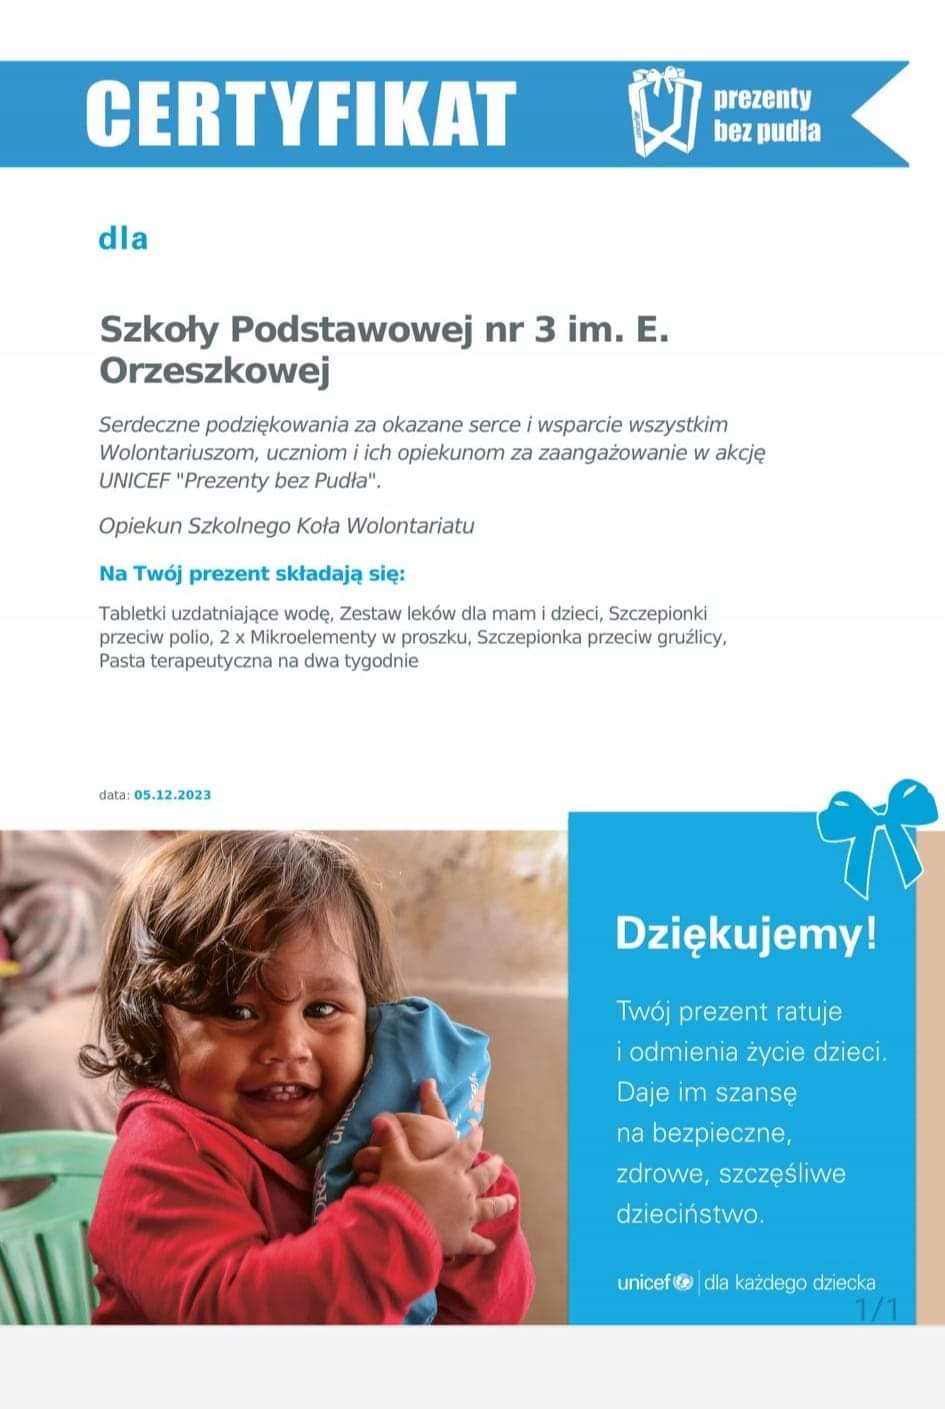 UNICEF "Prezenty bez Pudła"